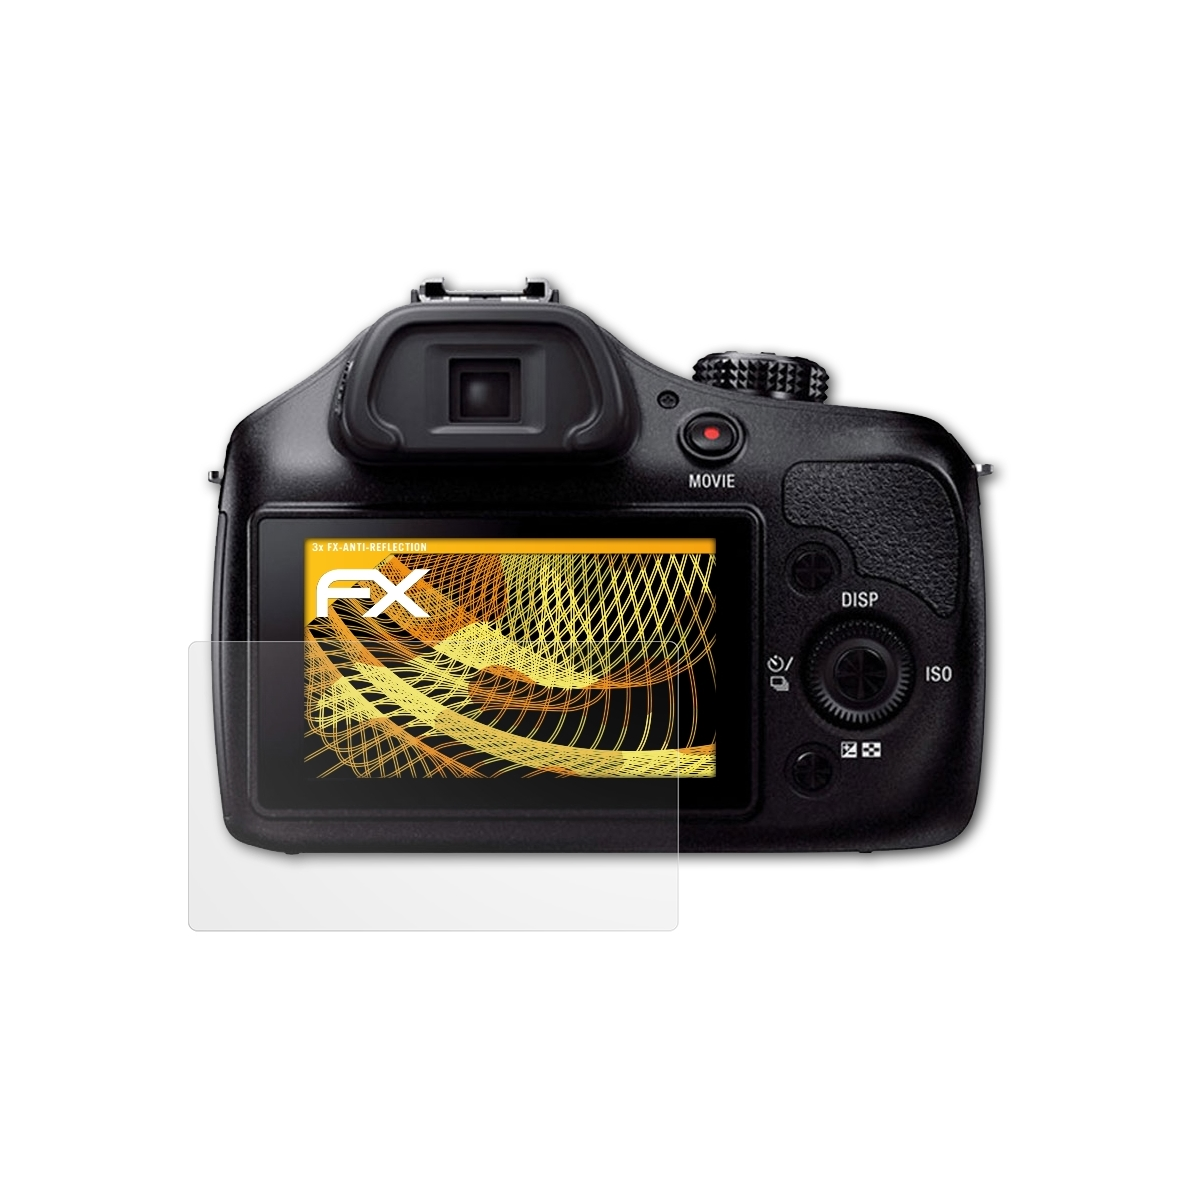 ATFOLIX 3x (ILCE-3000)) Displayschutz(für FX-Antireflex Alpha a3000 Sony